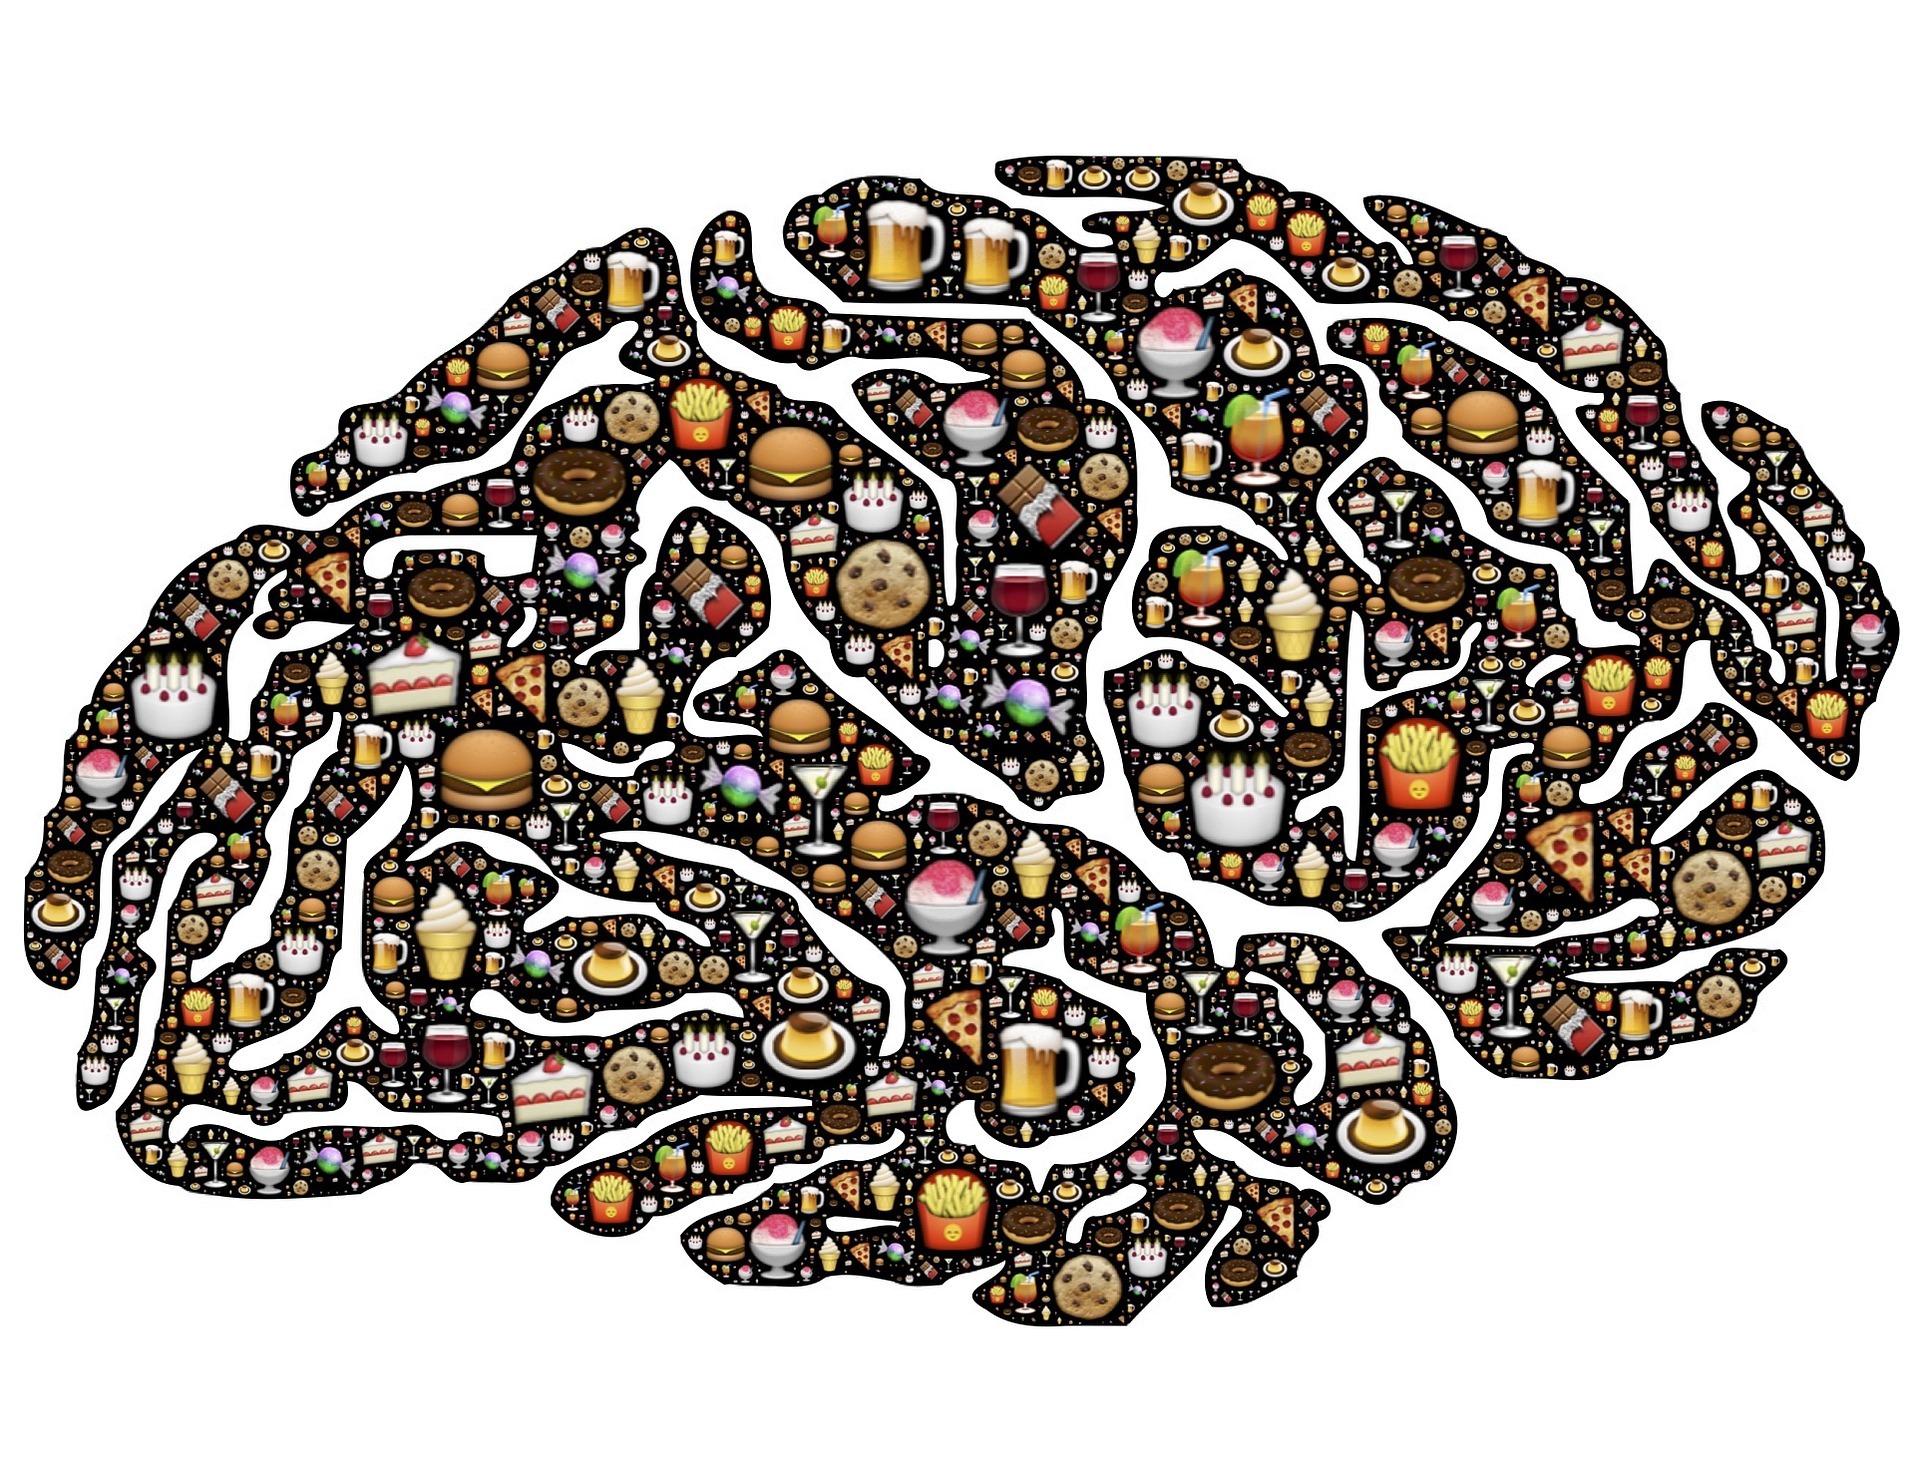 Ешьте правильно: метаболизм влияет на здоровье мозга